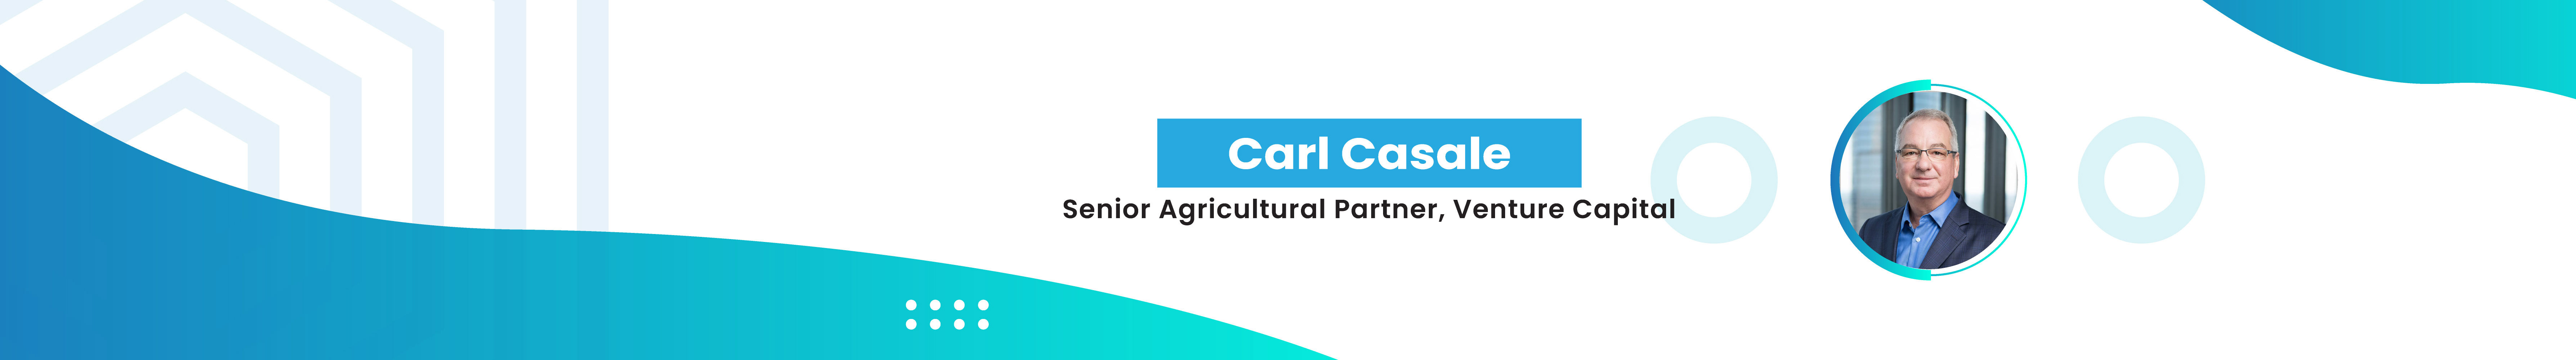 Carl Casale profil başlığı